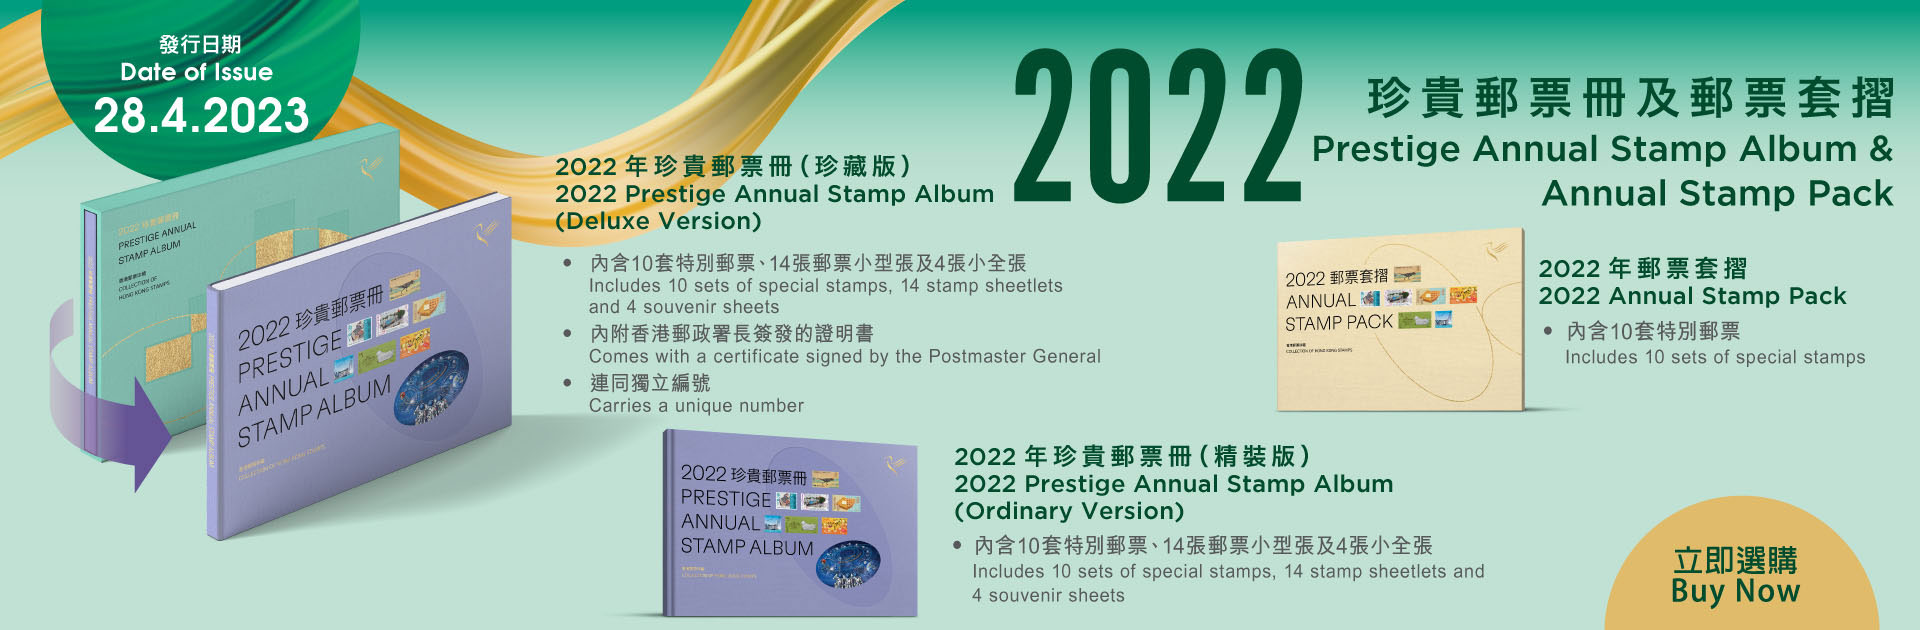 《2022年珍貴郵票冊》和《2022年郵票套摺》